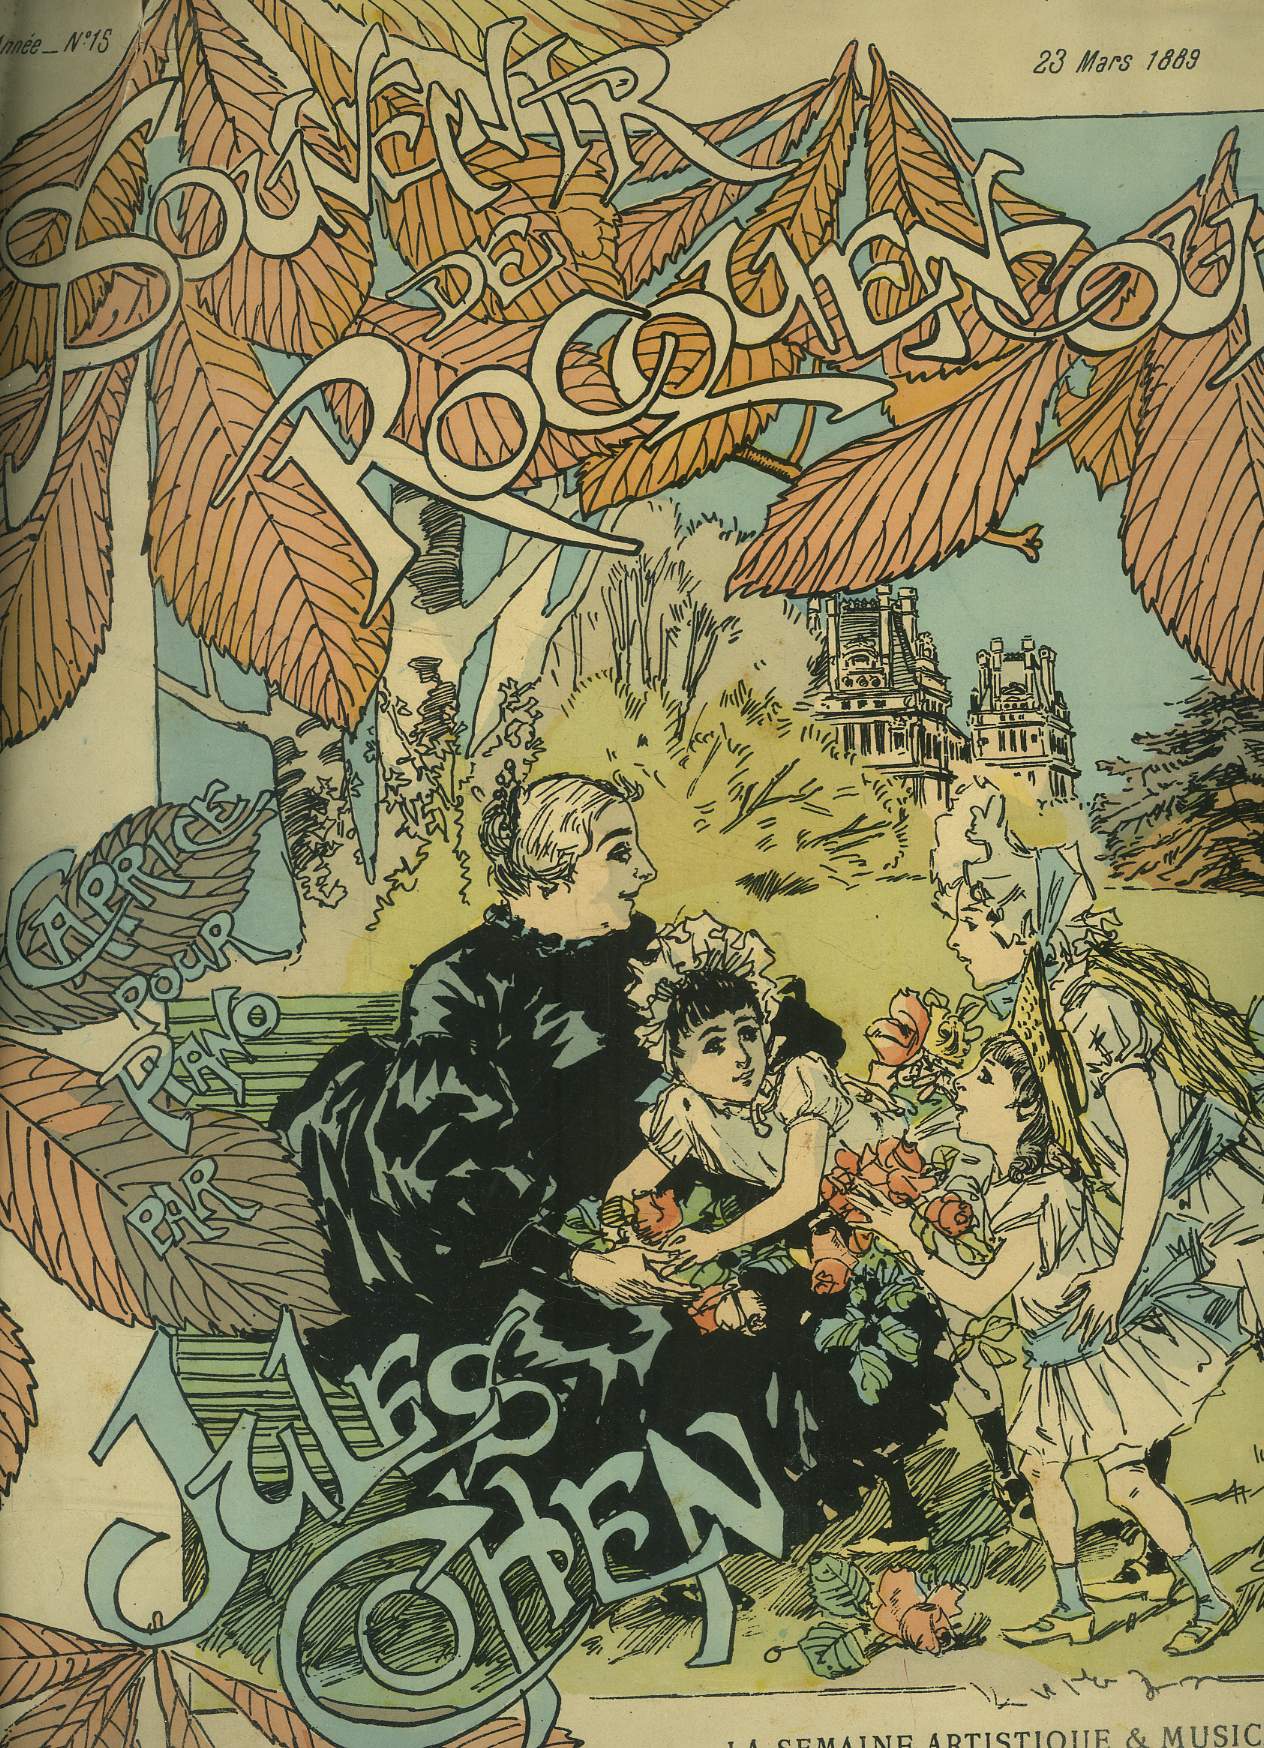 La semaine artistique et musicale N 15-23 mars 1889 -Souvenir de Rocquencourt, caprice pour piano